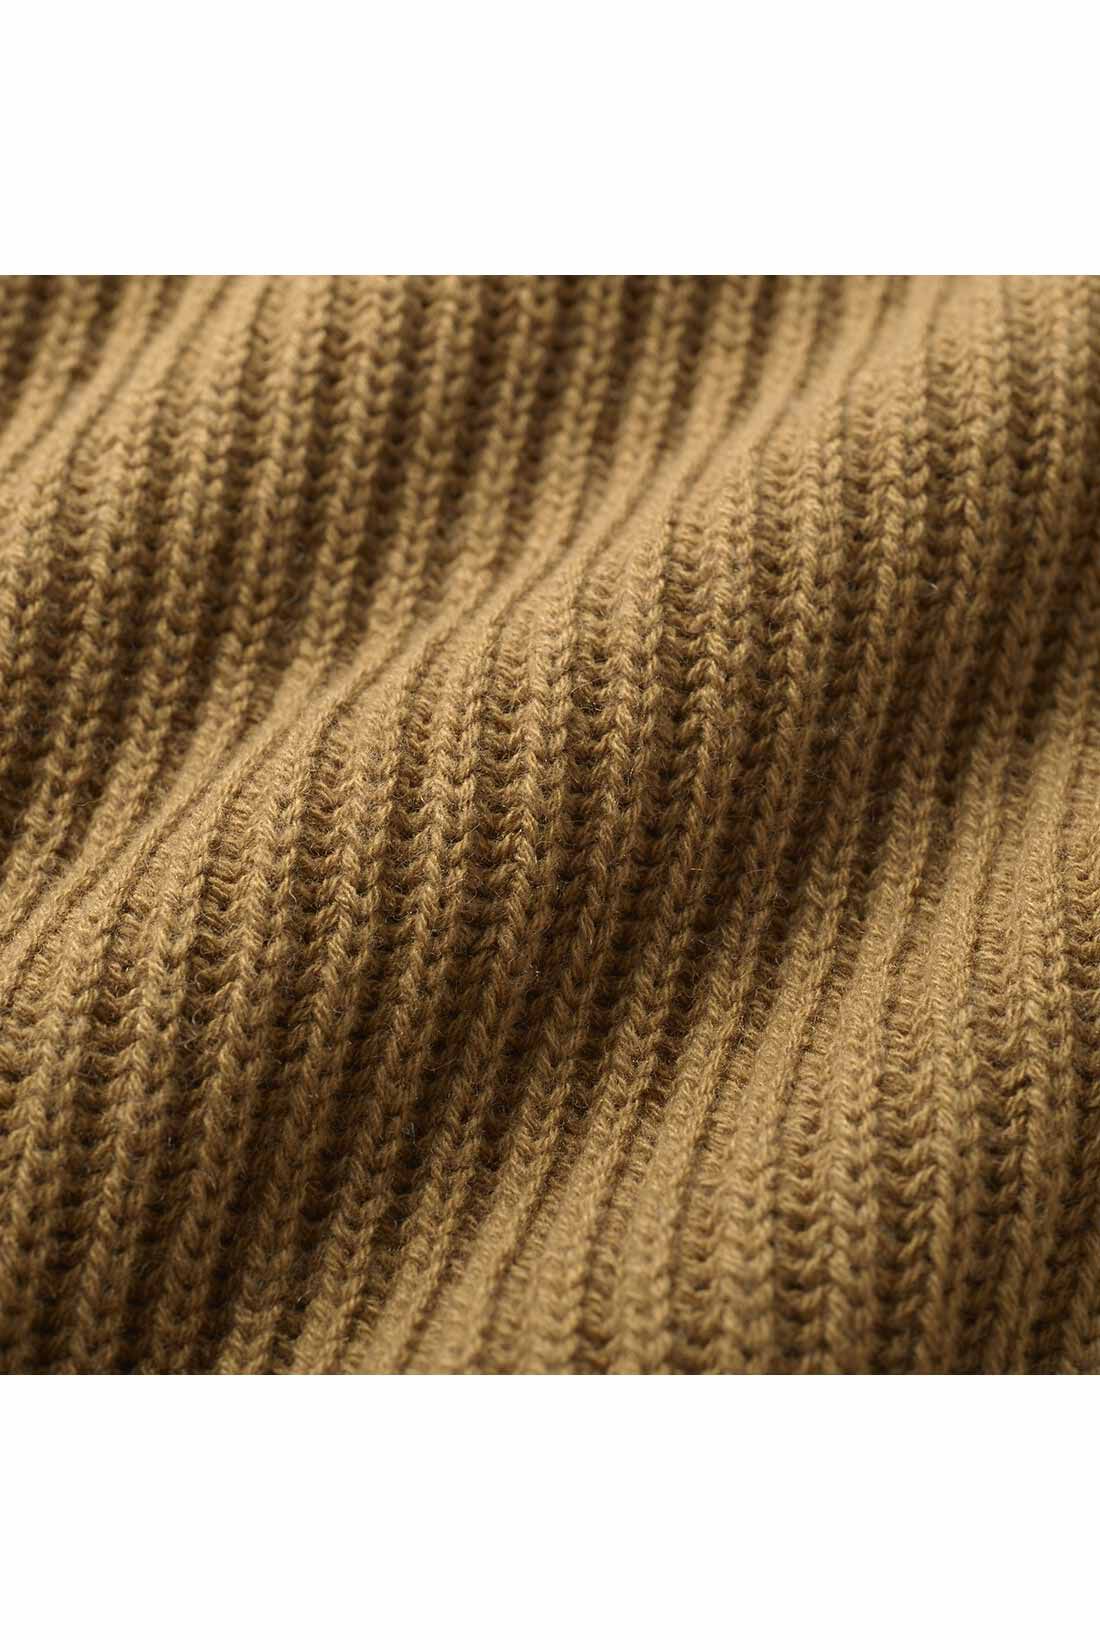 Real Stock|THREE FIFTY STANDARD　畦（あぜ）編みのざっくりニットセーター〈ネイビー〉|ざっくり感がかわいい畦（あぜ）編みでふんわりとした着心地。　※お届けするカラーとは異なります。